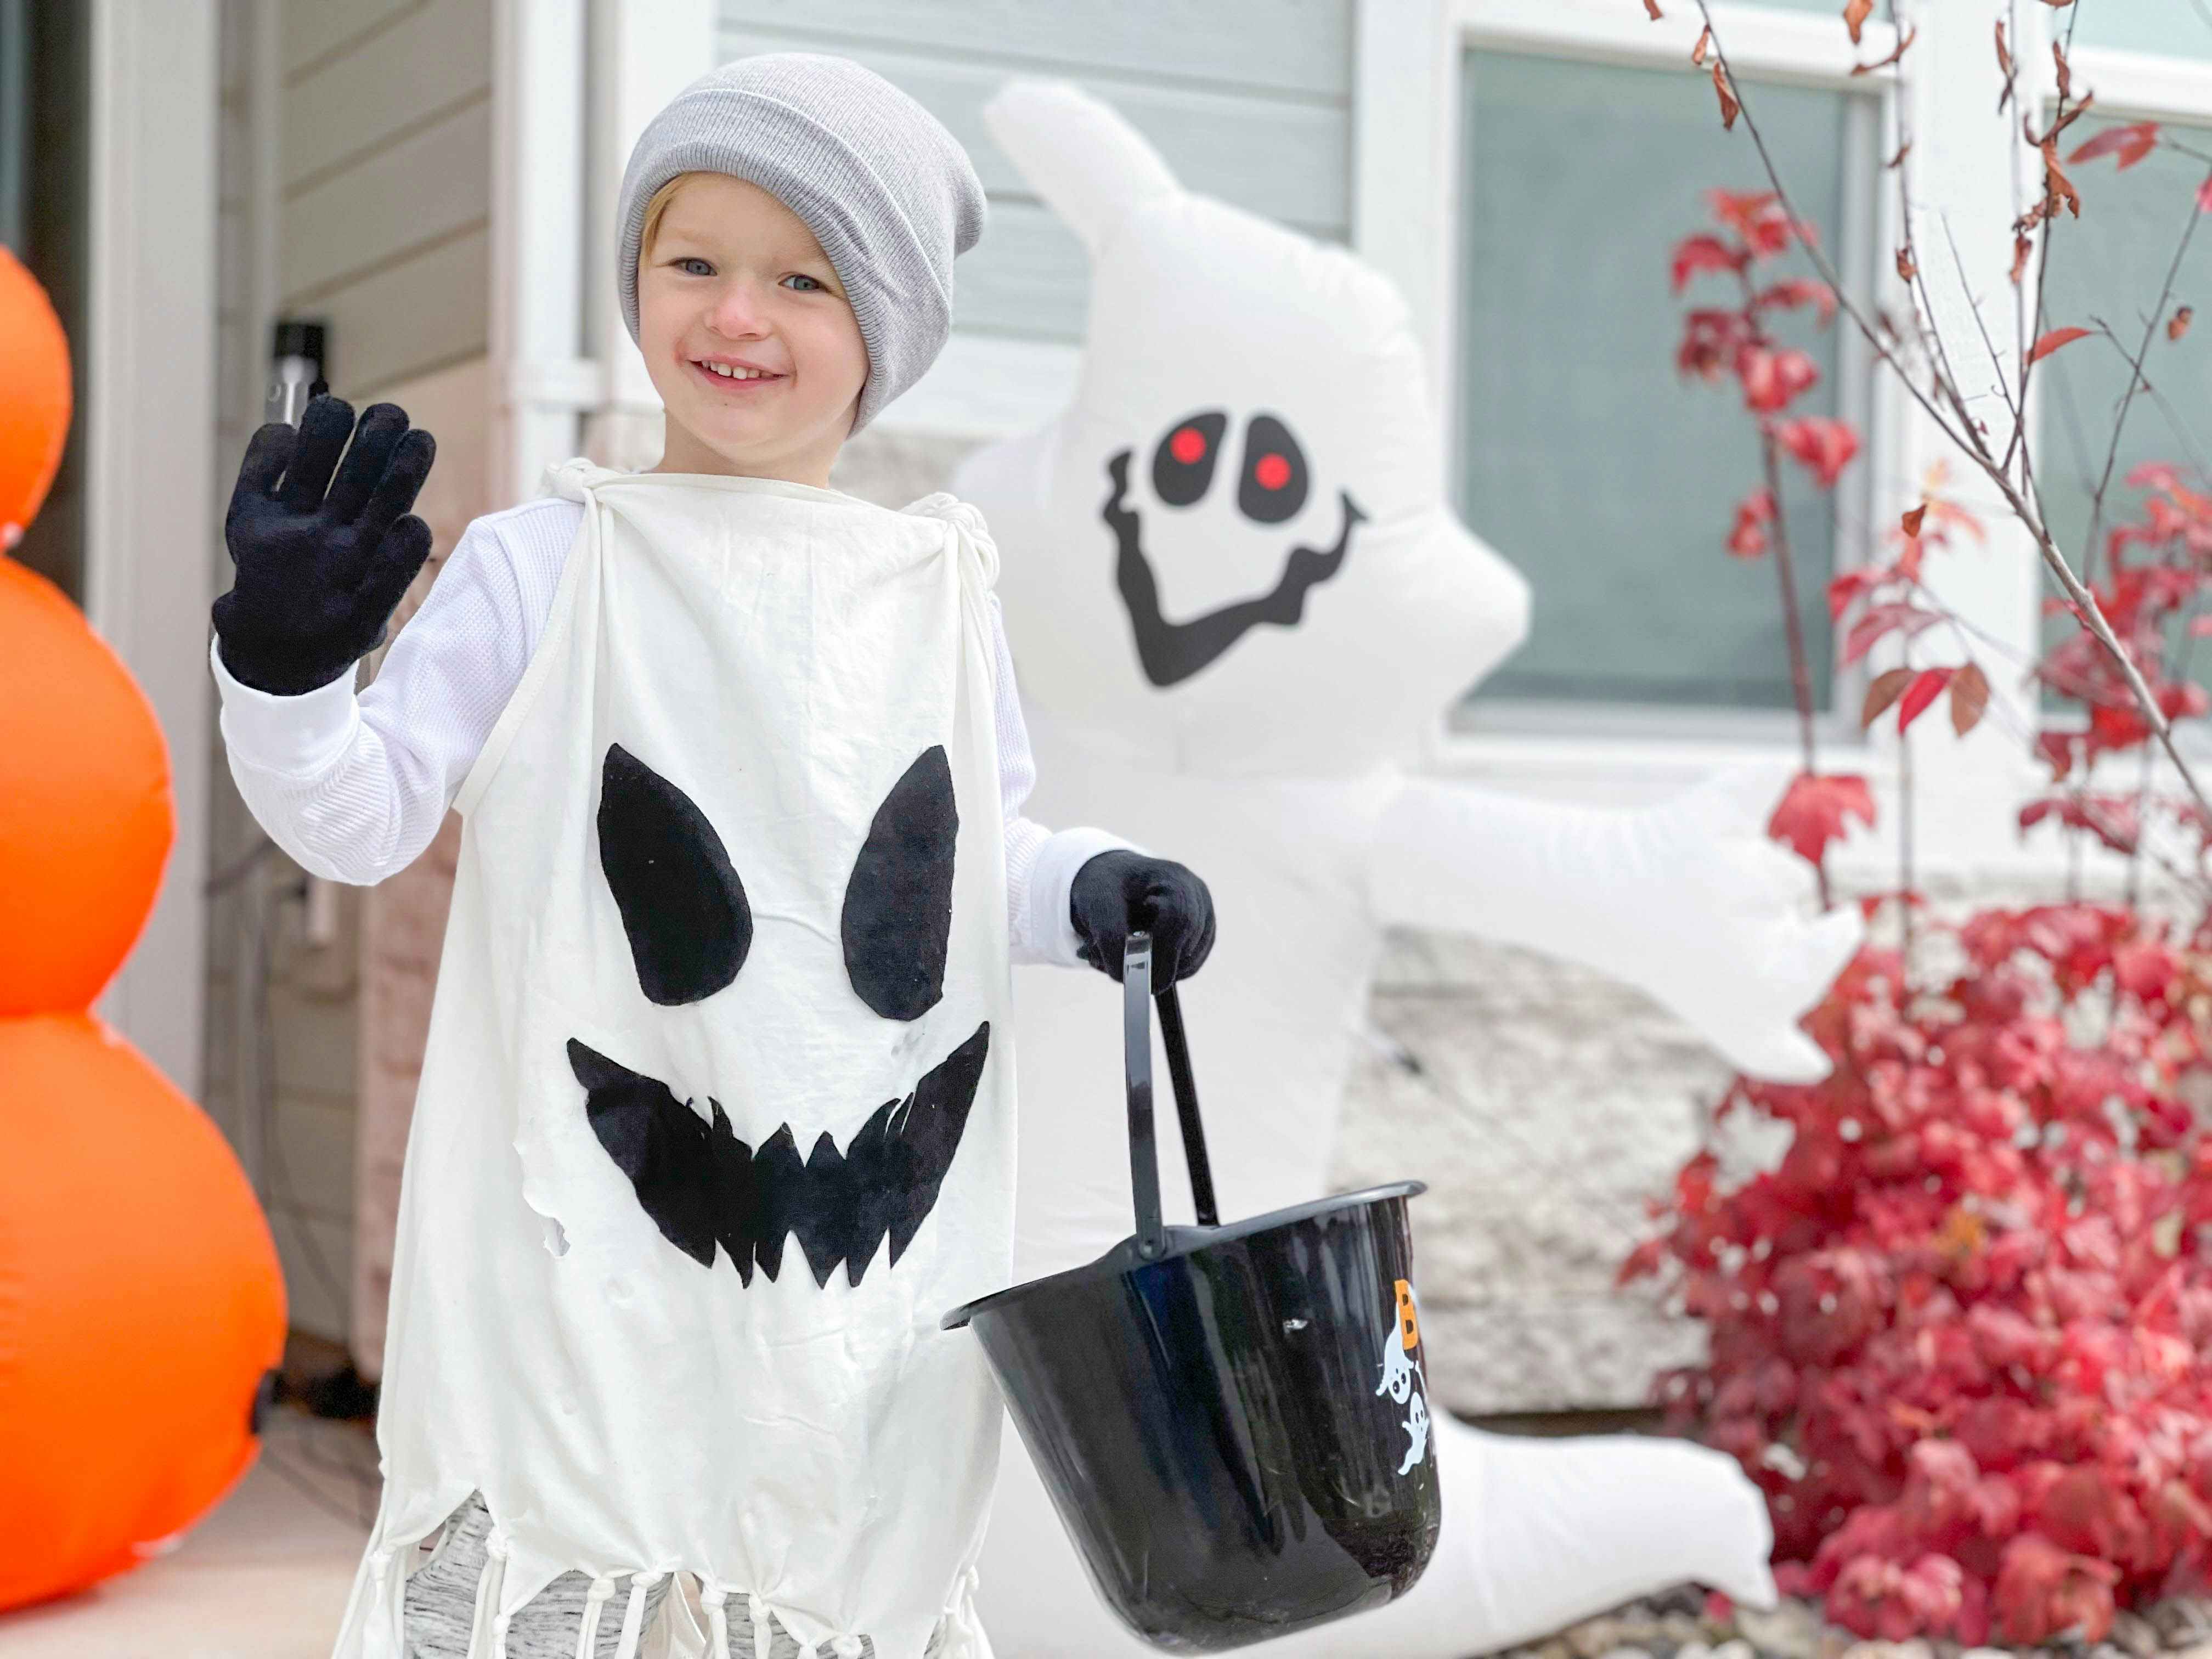 kid in ghost costume in front of door